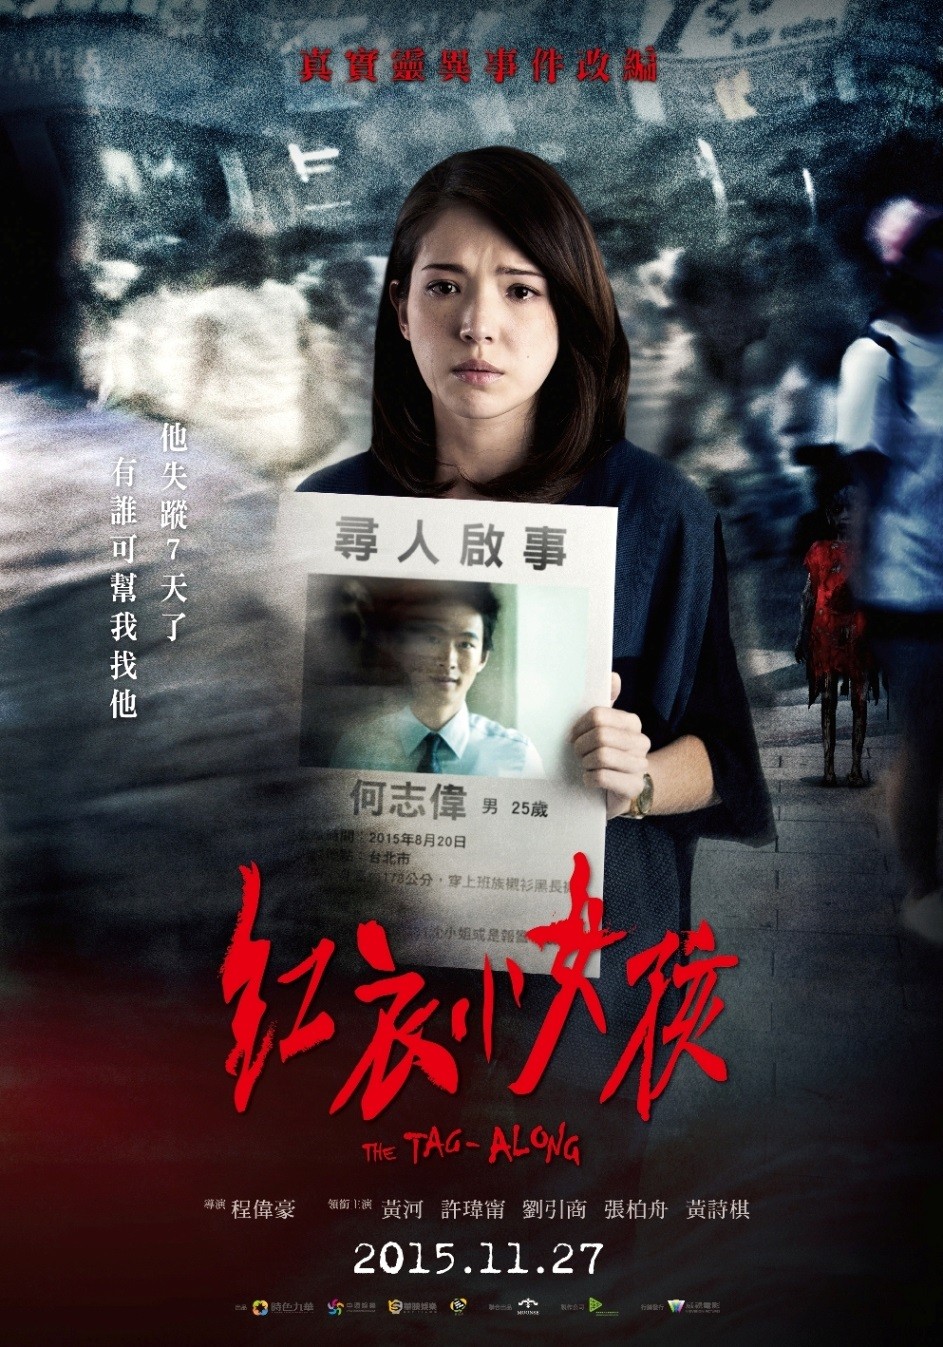  红衣小女孩 The Tag-Along (2015) 2015年底上映台湾近10年最卖座恐怖片 120-037 